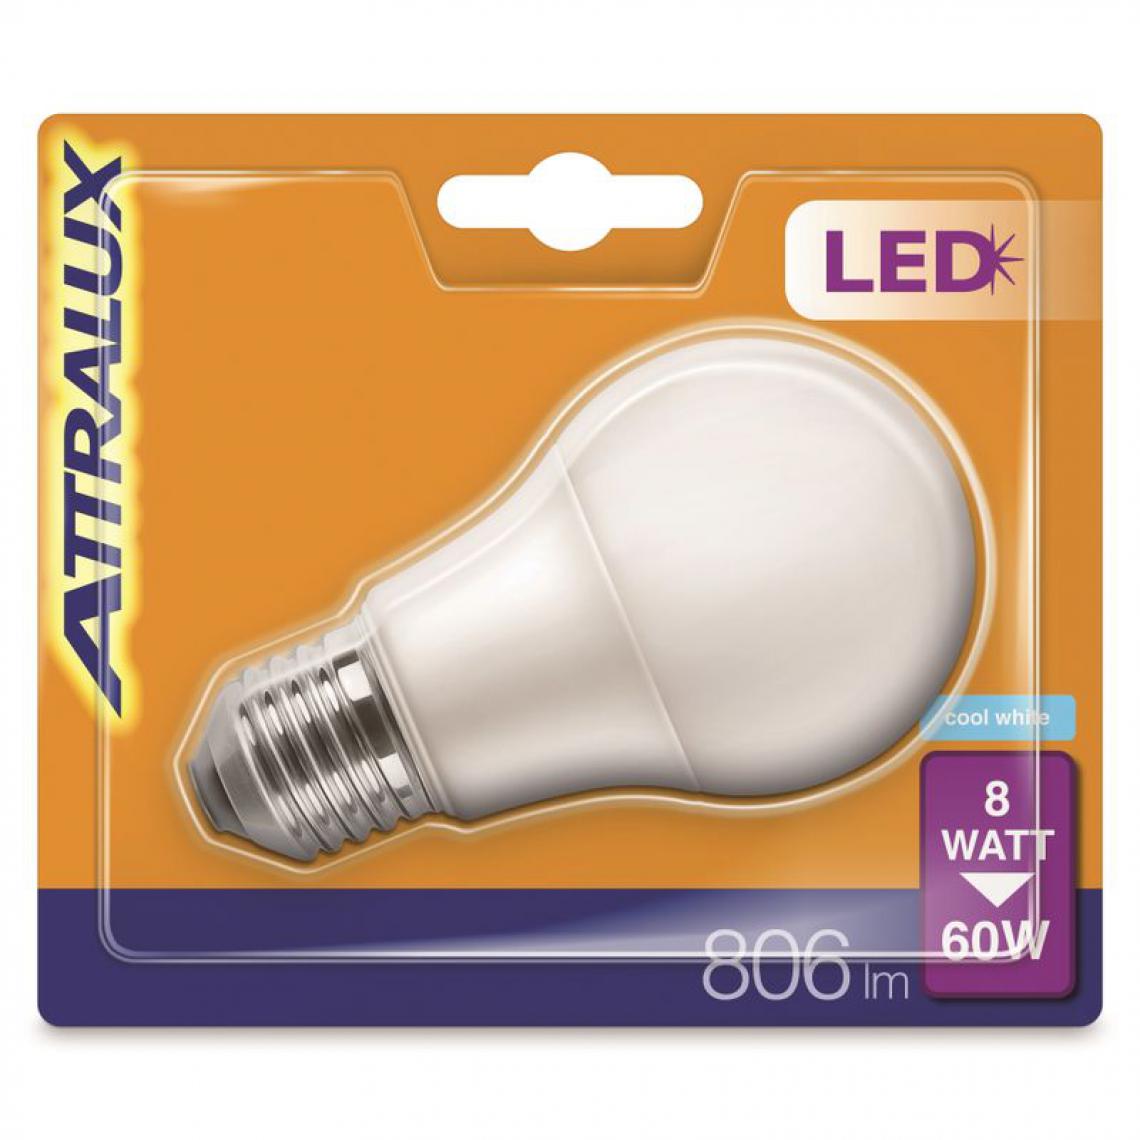 But - Ampoule LED 60W E27 ATTRALUX Blanc froid - Ampoules LED